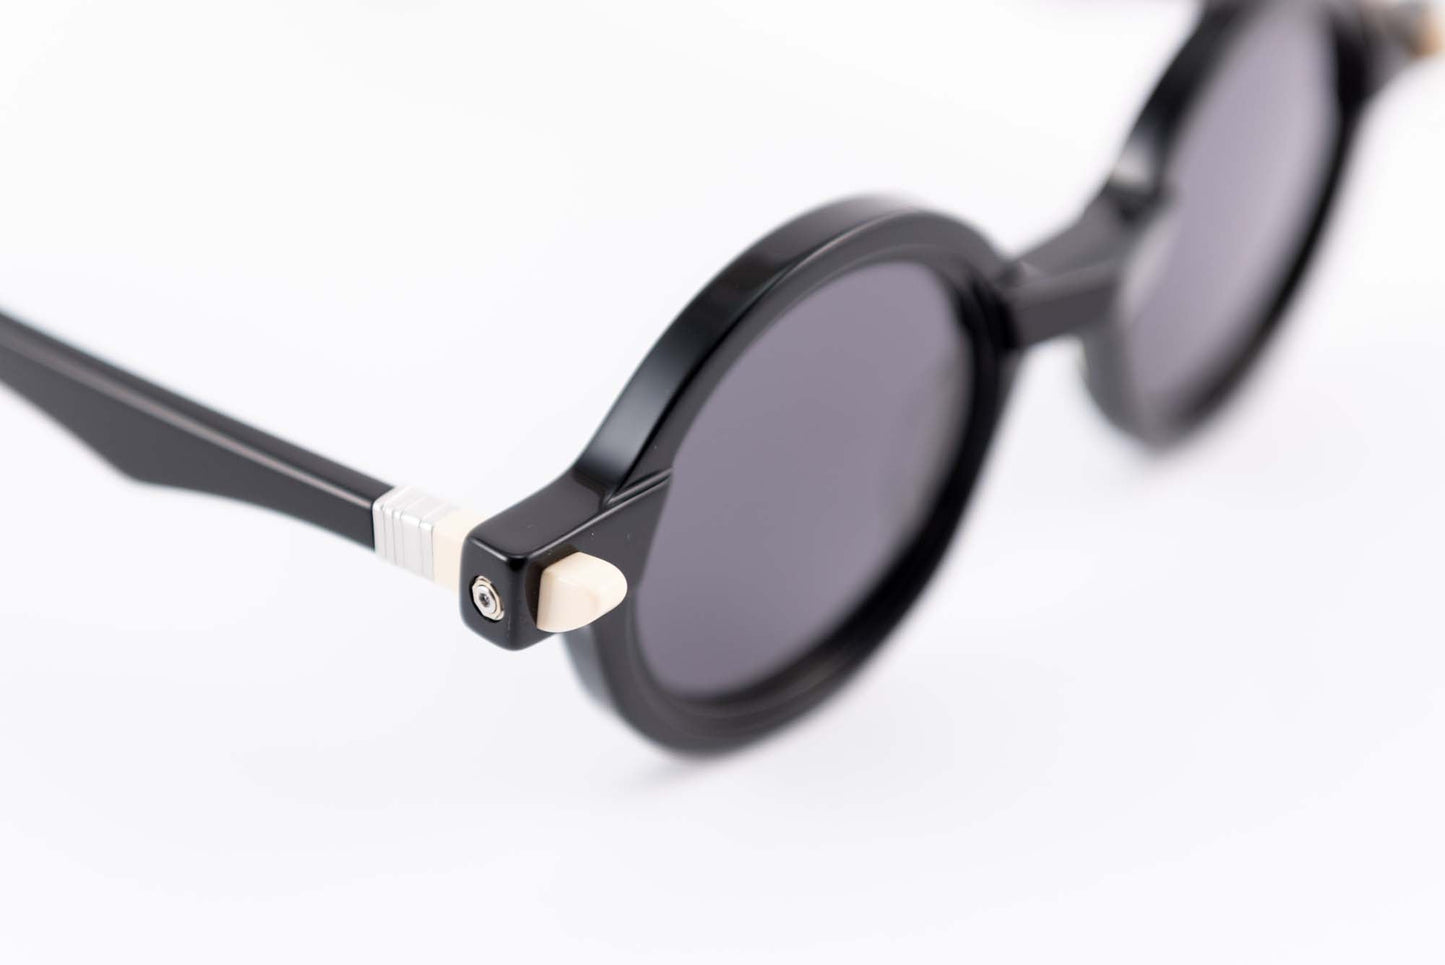 Kuboraum Occhiali da sole Nero / Acetato / Tondo Kuboraum MASKE Q7 BS: occhiale in acetato nero tondo da sole